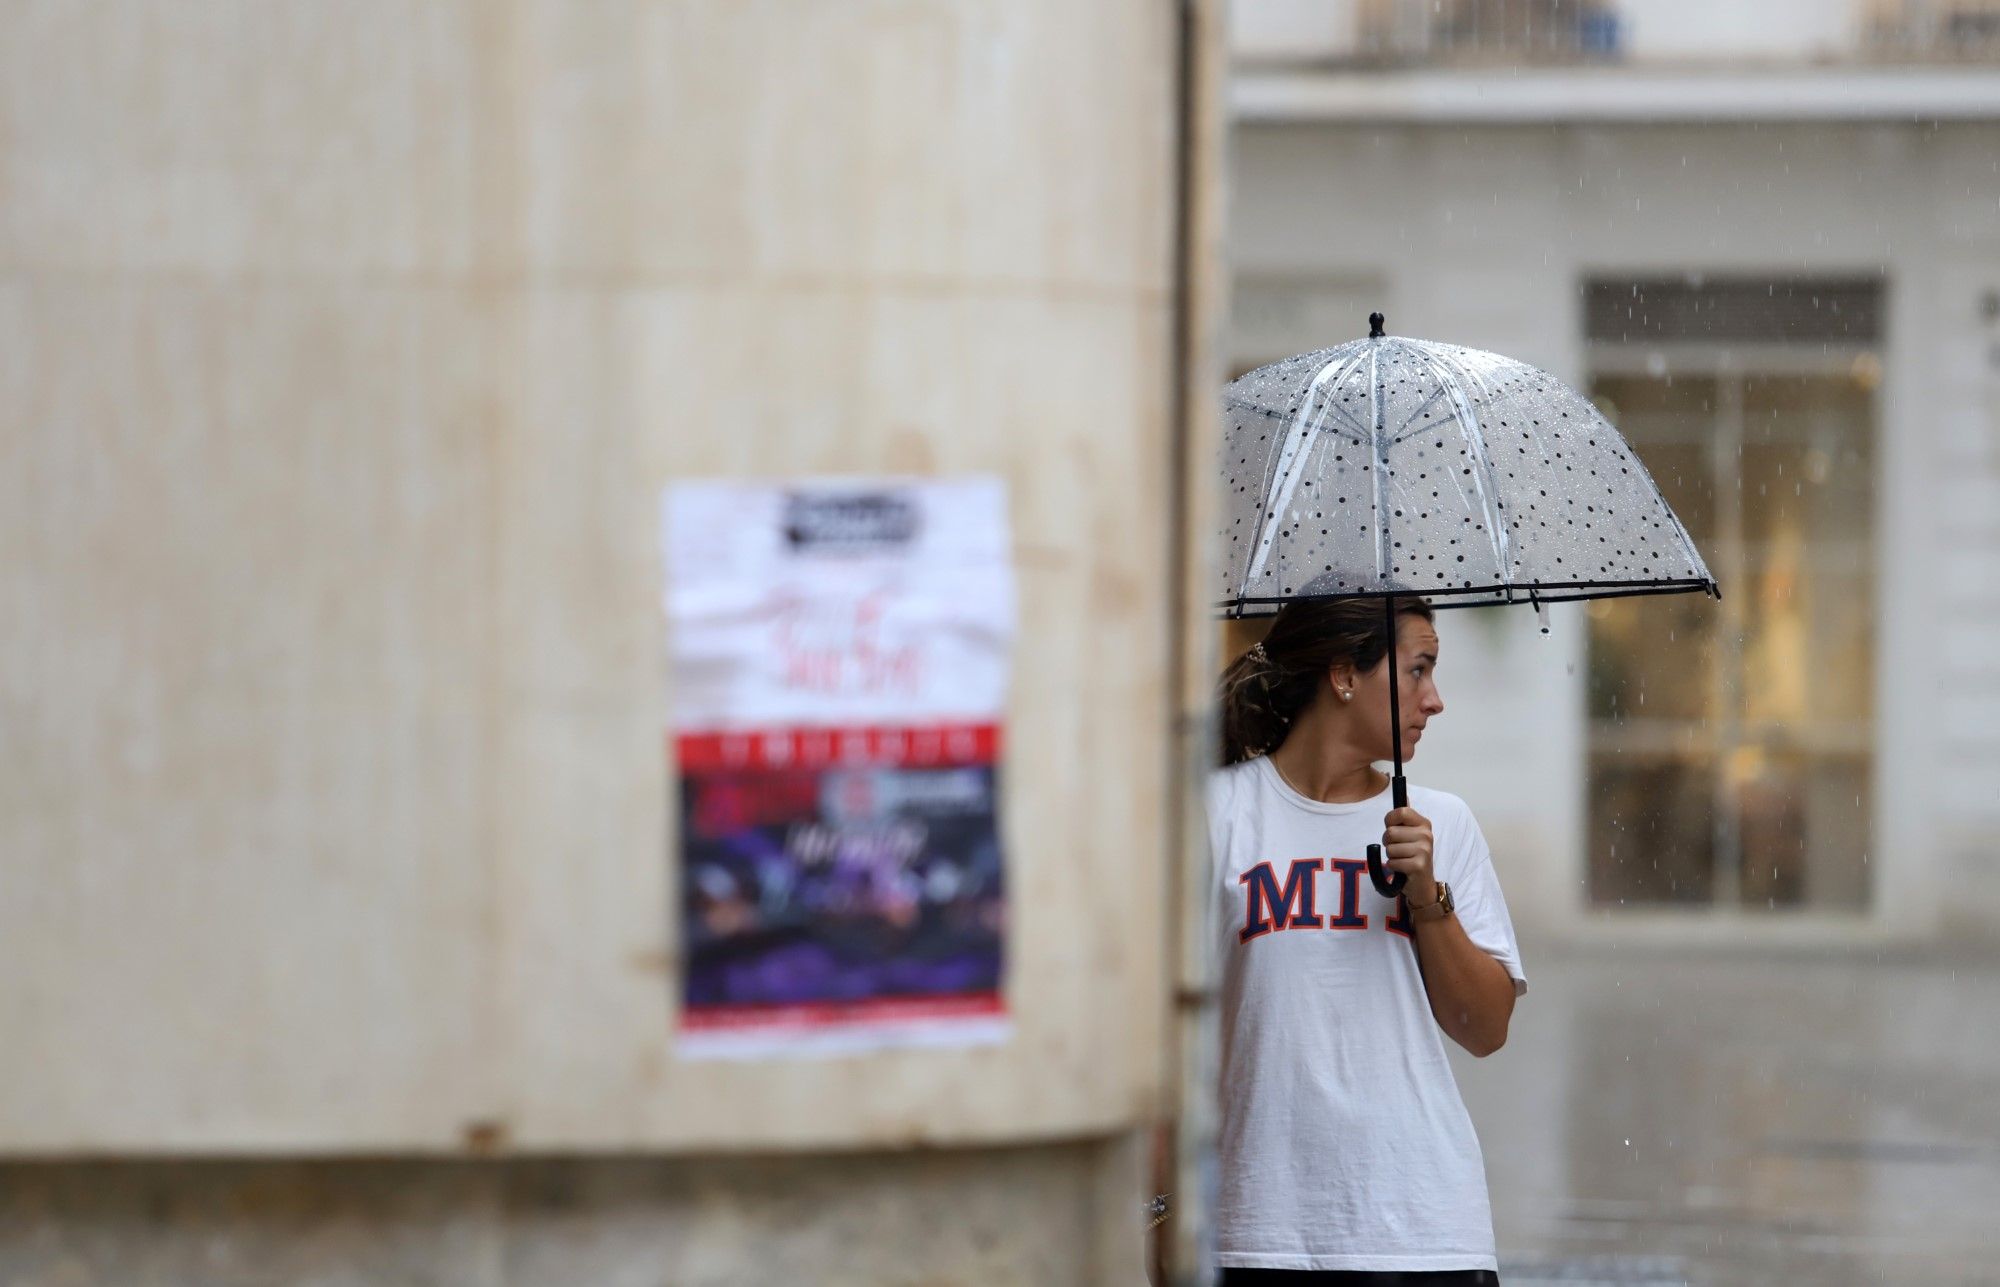 Primeras lluvias en Málaga capital con cierta intensidad desde hace semanas